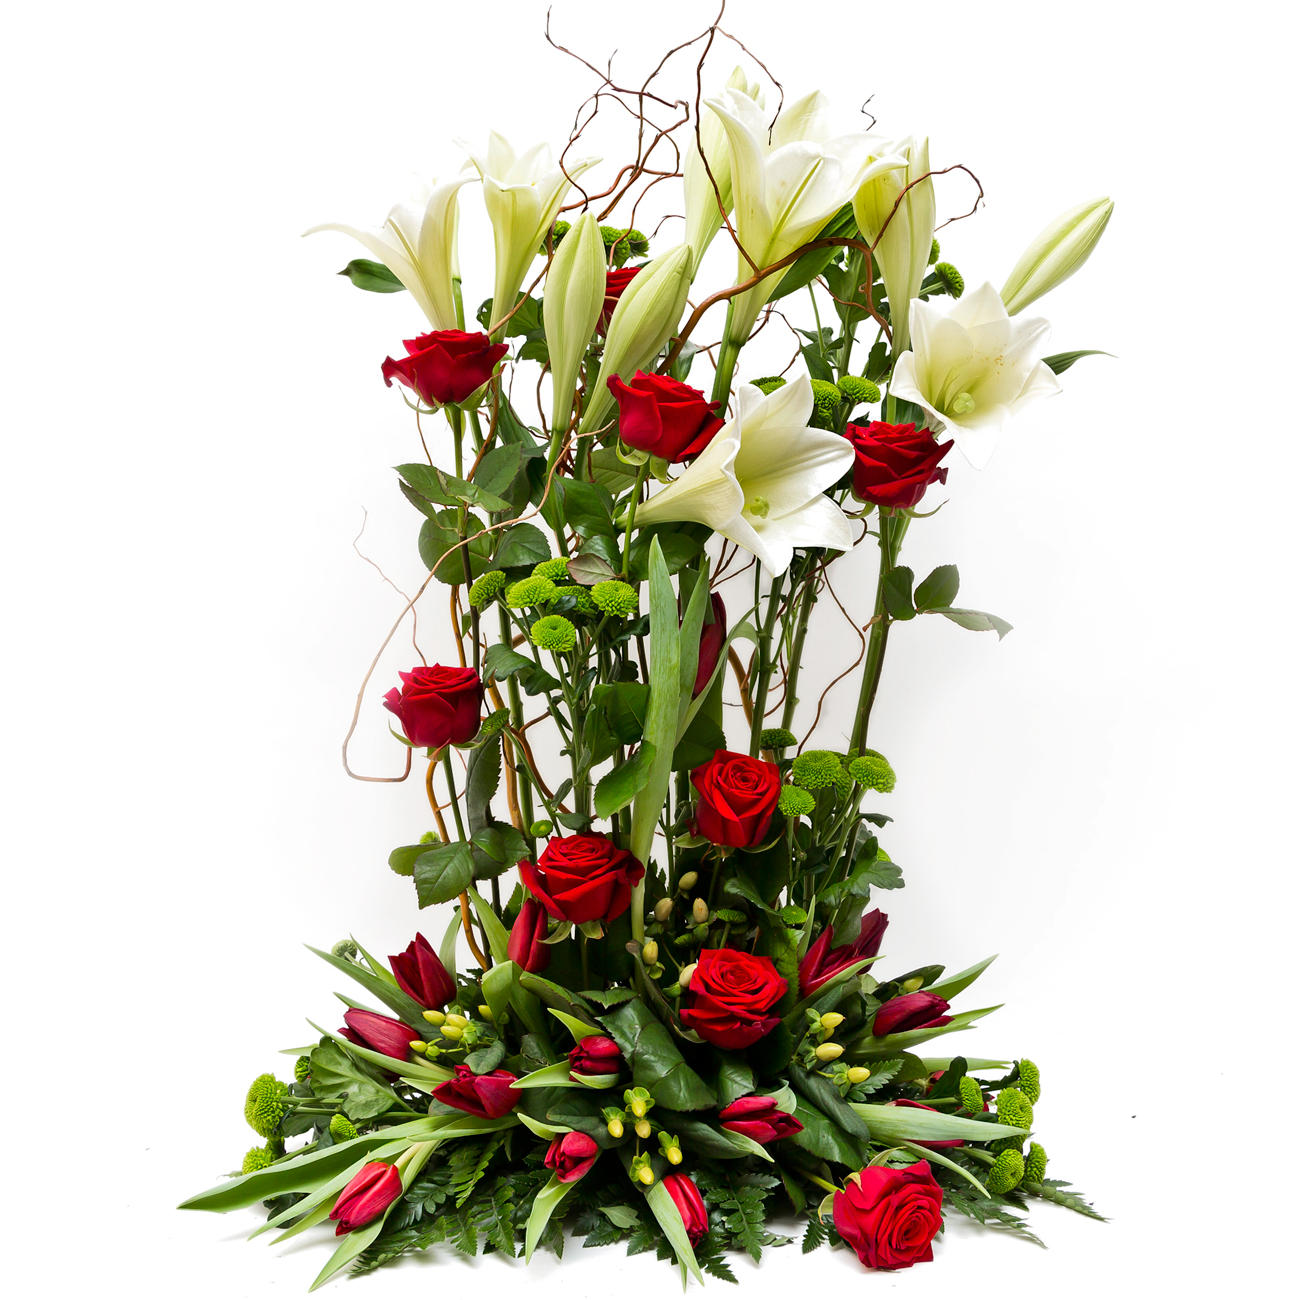 101 Stående dekoration med rosor, liljor och tulpaner. Tulpanerna finns under säsongen dec-april. Pris: 1700 kr.